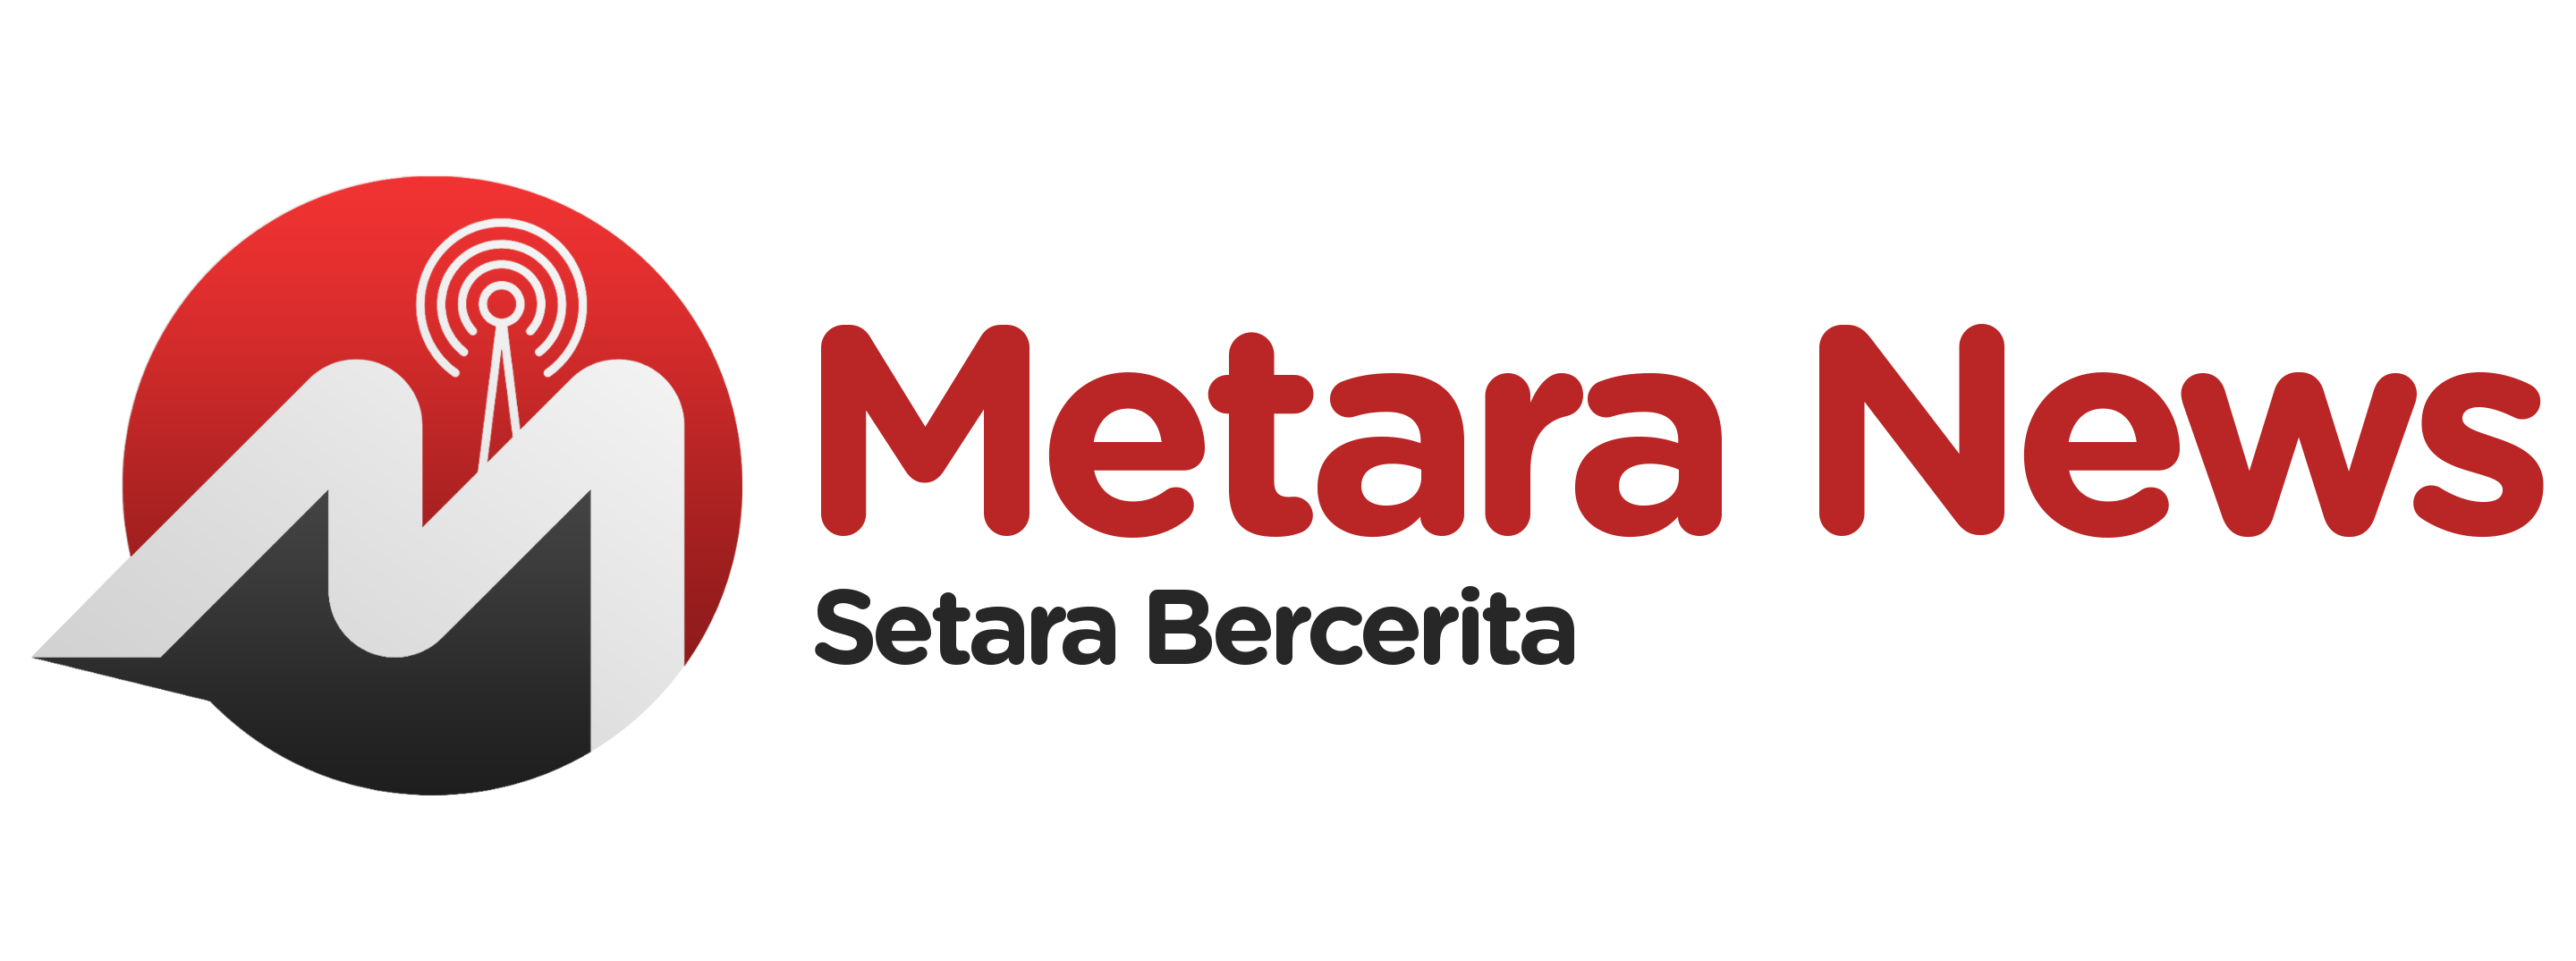 Metara News